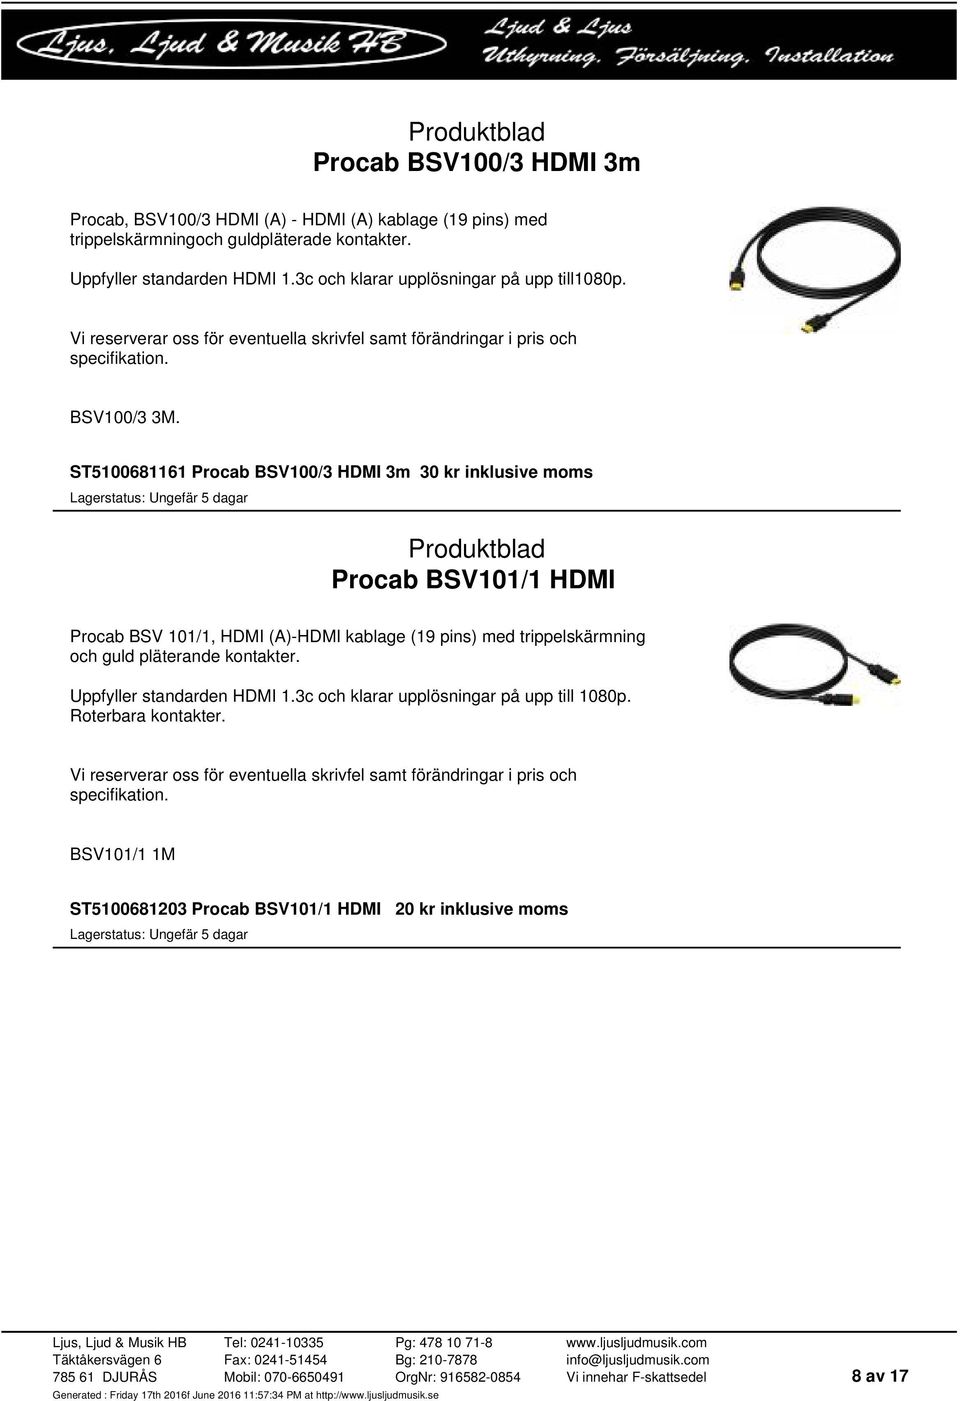 ST5100681161 Procab BSV100/3 HDMI 3m 30 kr inklusive moms Procab BSV101/1 HDMI Procab BSV 101/1, HDMI (A)-HDMI kablage (19 pins) med